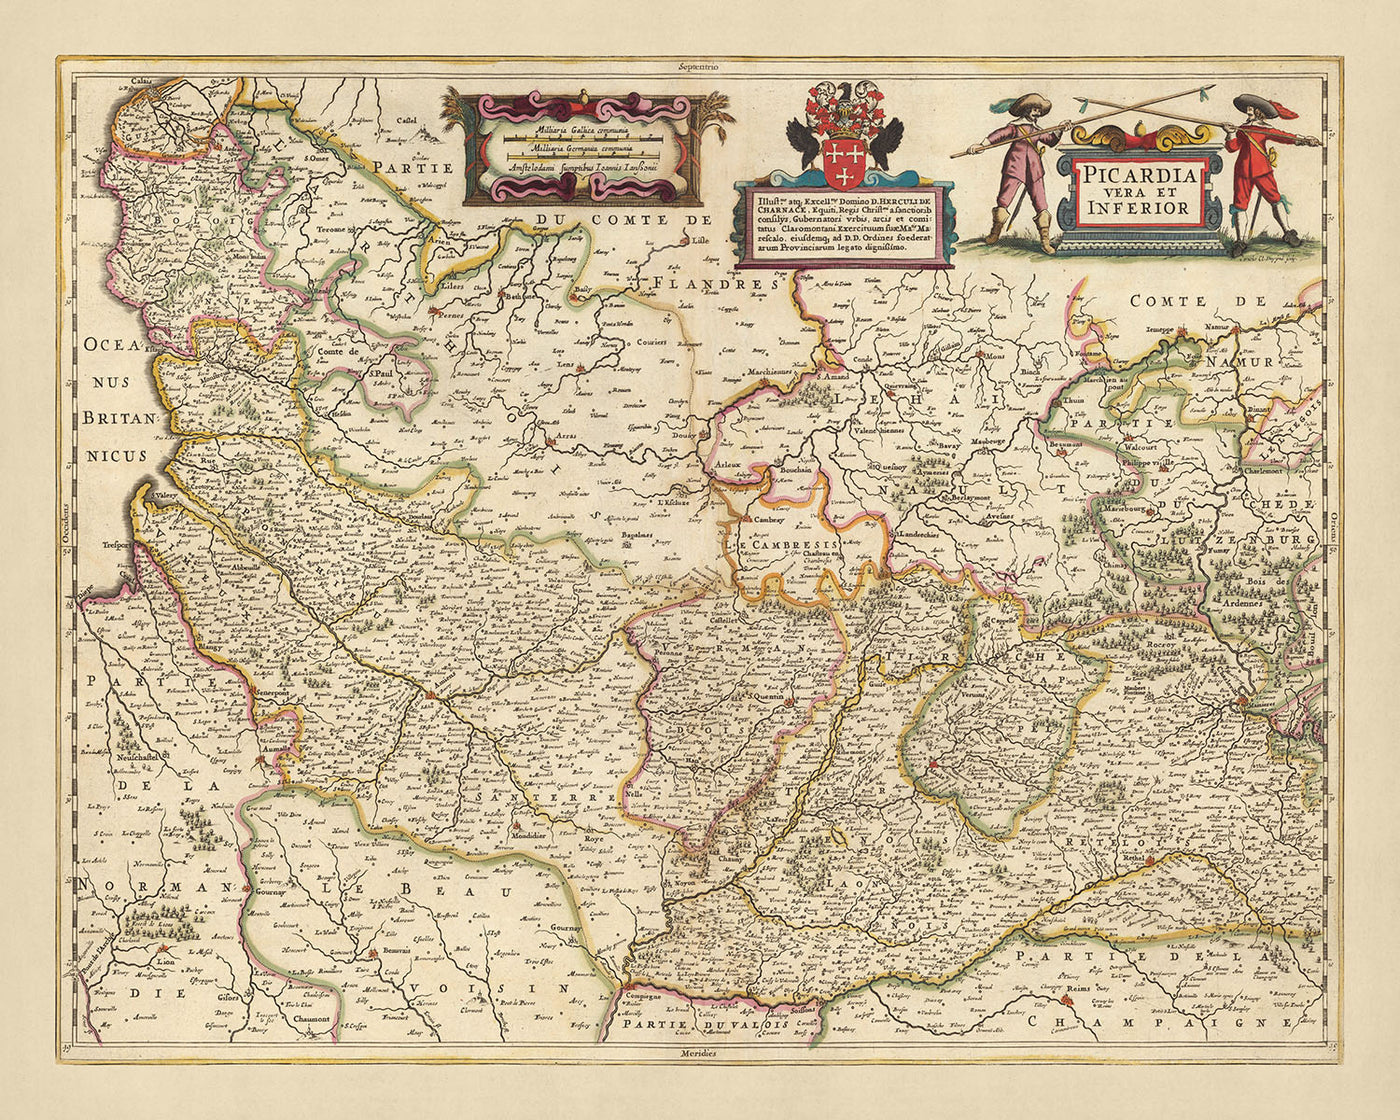 Old Map of Picardy, France by Visscher, 1690: Calais, Lille, Amiens, Reims, Scarpe-Escaut Park